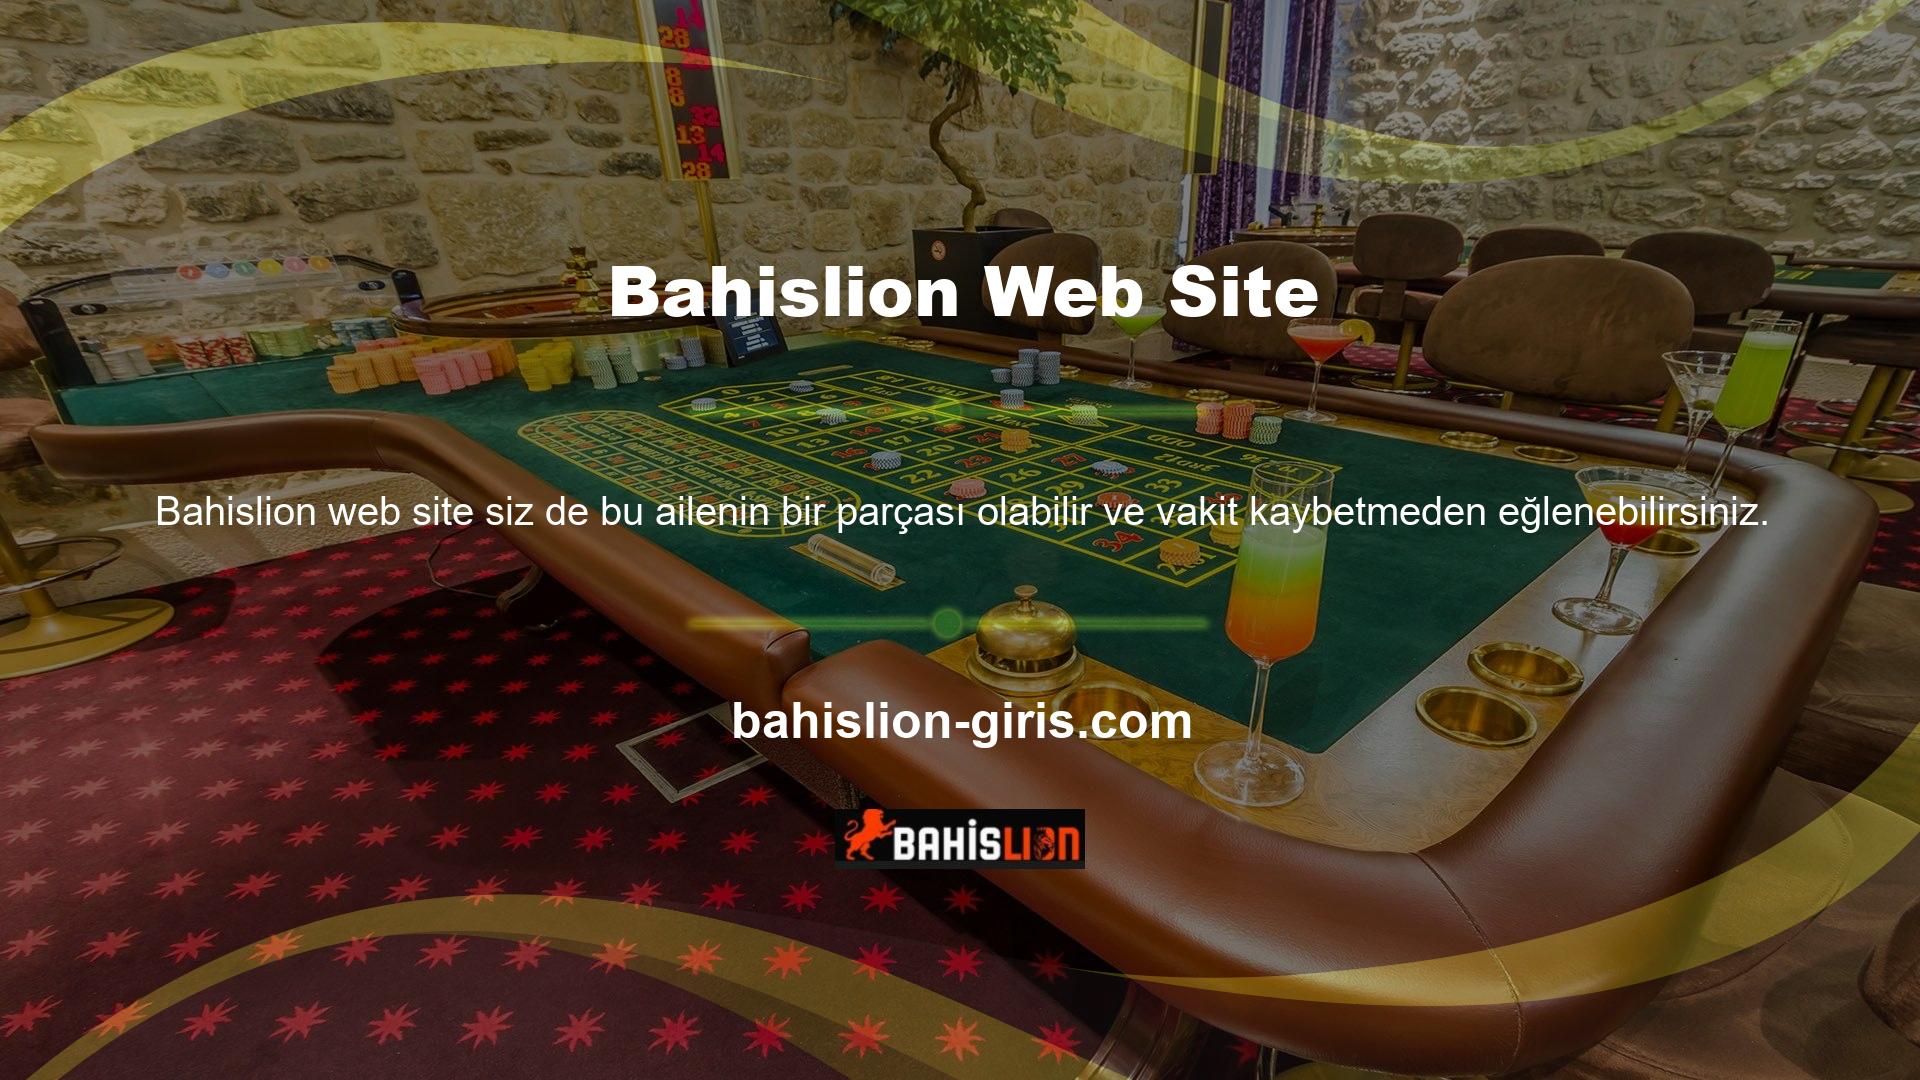 Çünkü Bahislion web sitemizi ziyaret edip kayıt olabilir